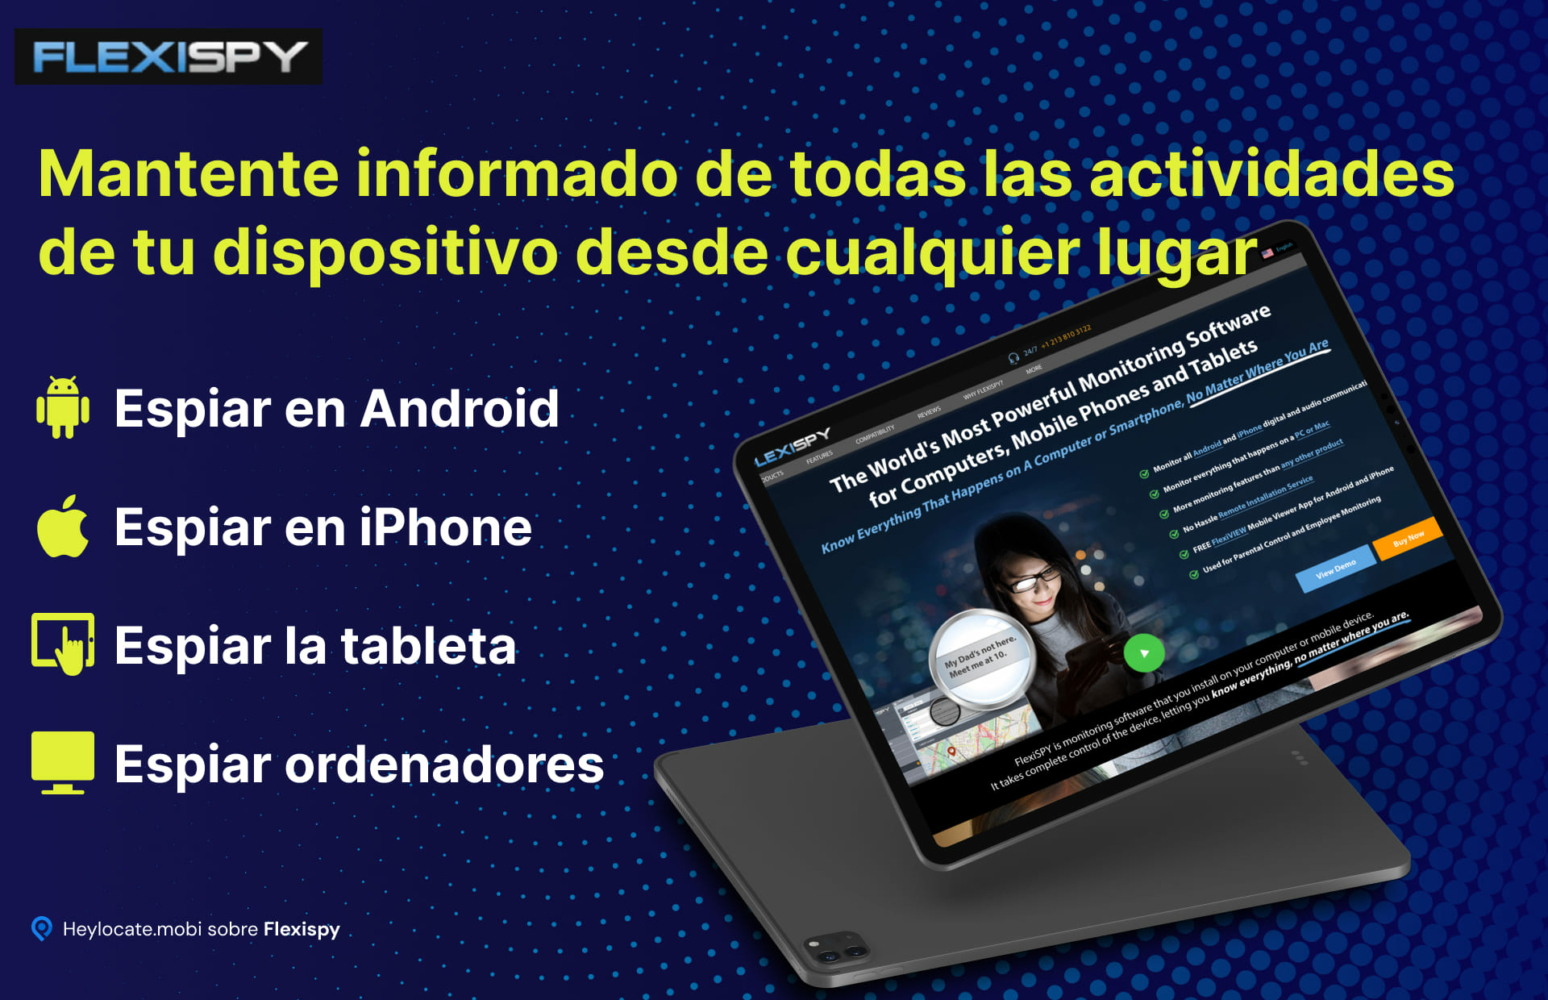 Imagen promocional de un gadget que muestra el sitio web de FlexiSPY, un software para monitorizar actividades en varios dispositivos como teléfonos Android e iOS, tabletas y ordenadores, con las características clave enumeradas al lado.